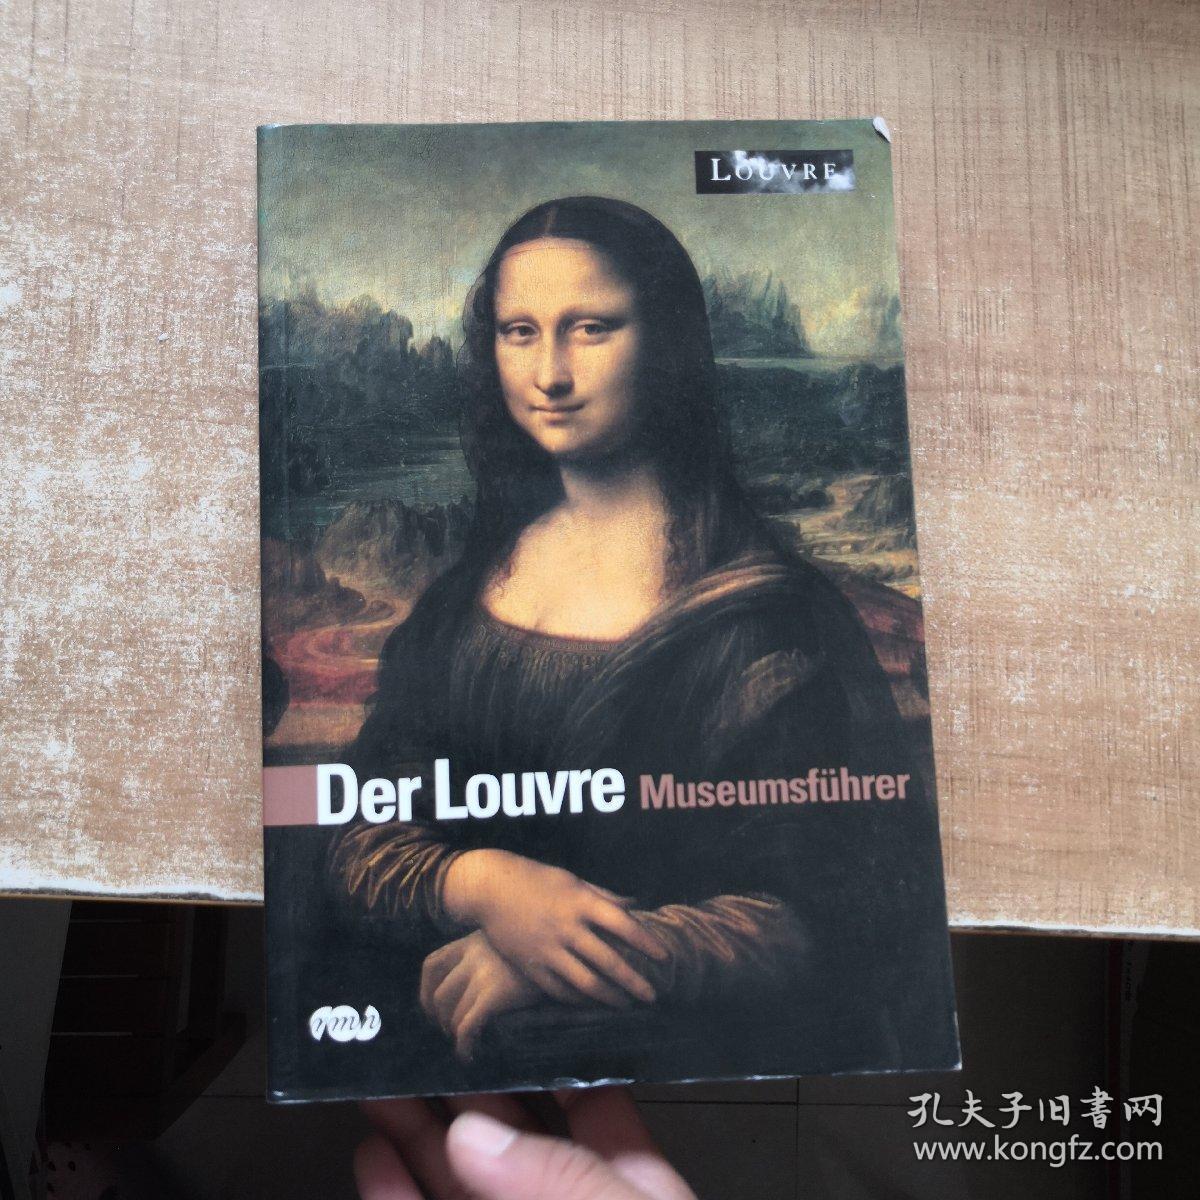 Der Louvre Museumsführer 德文原版 全铜版纸彩印